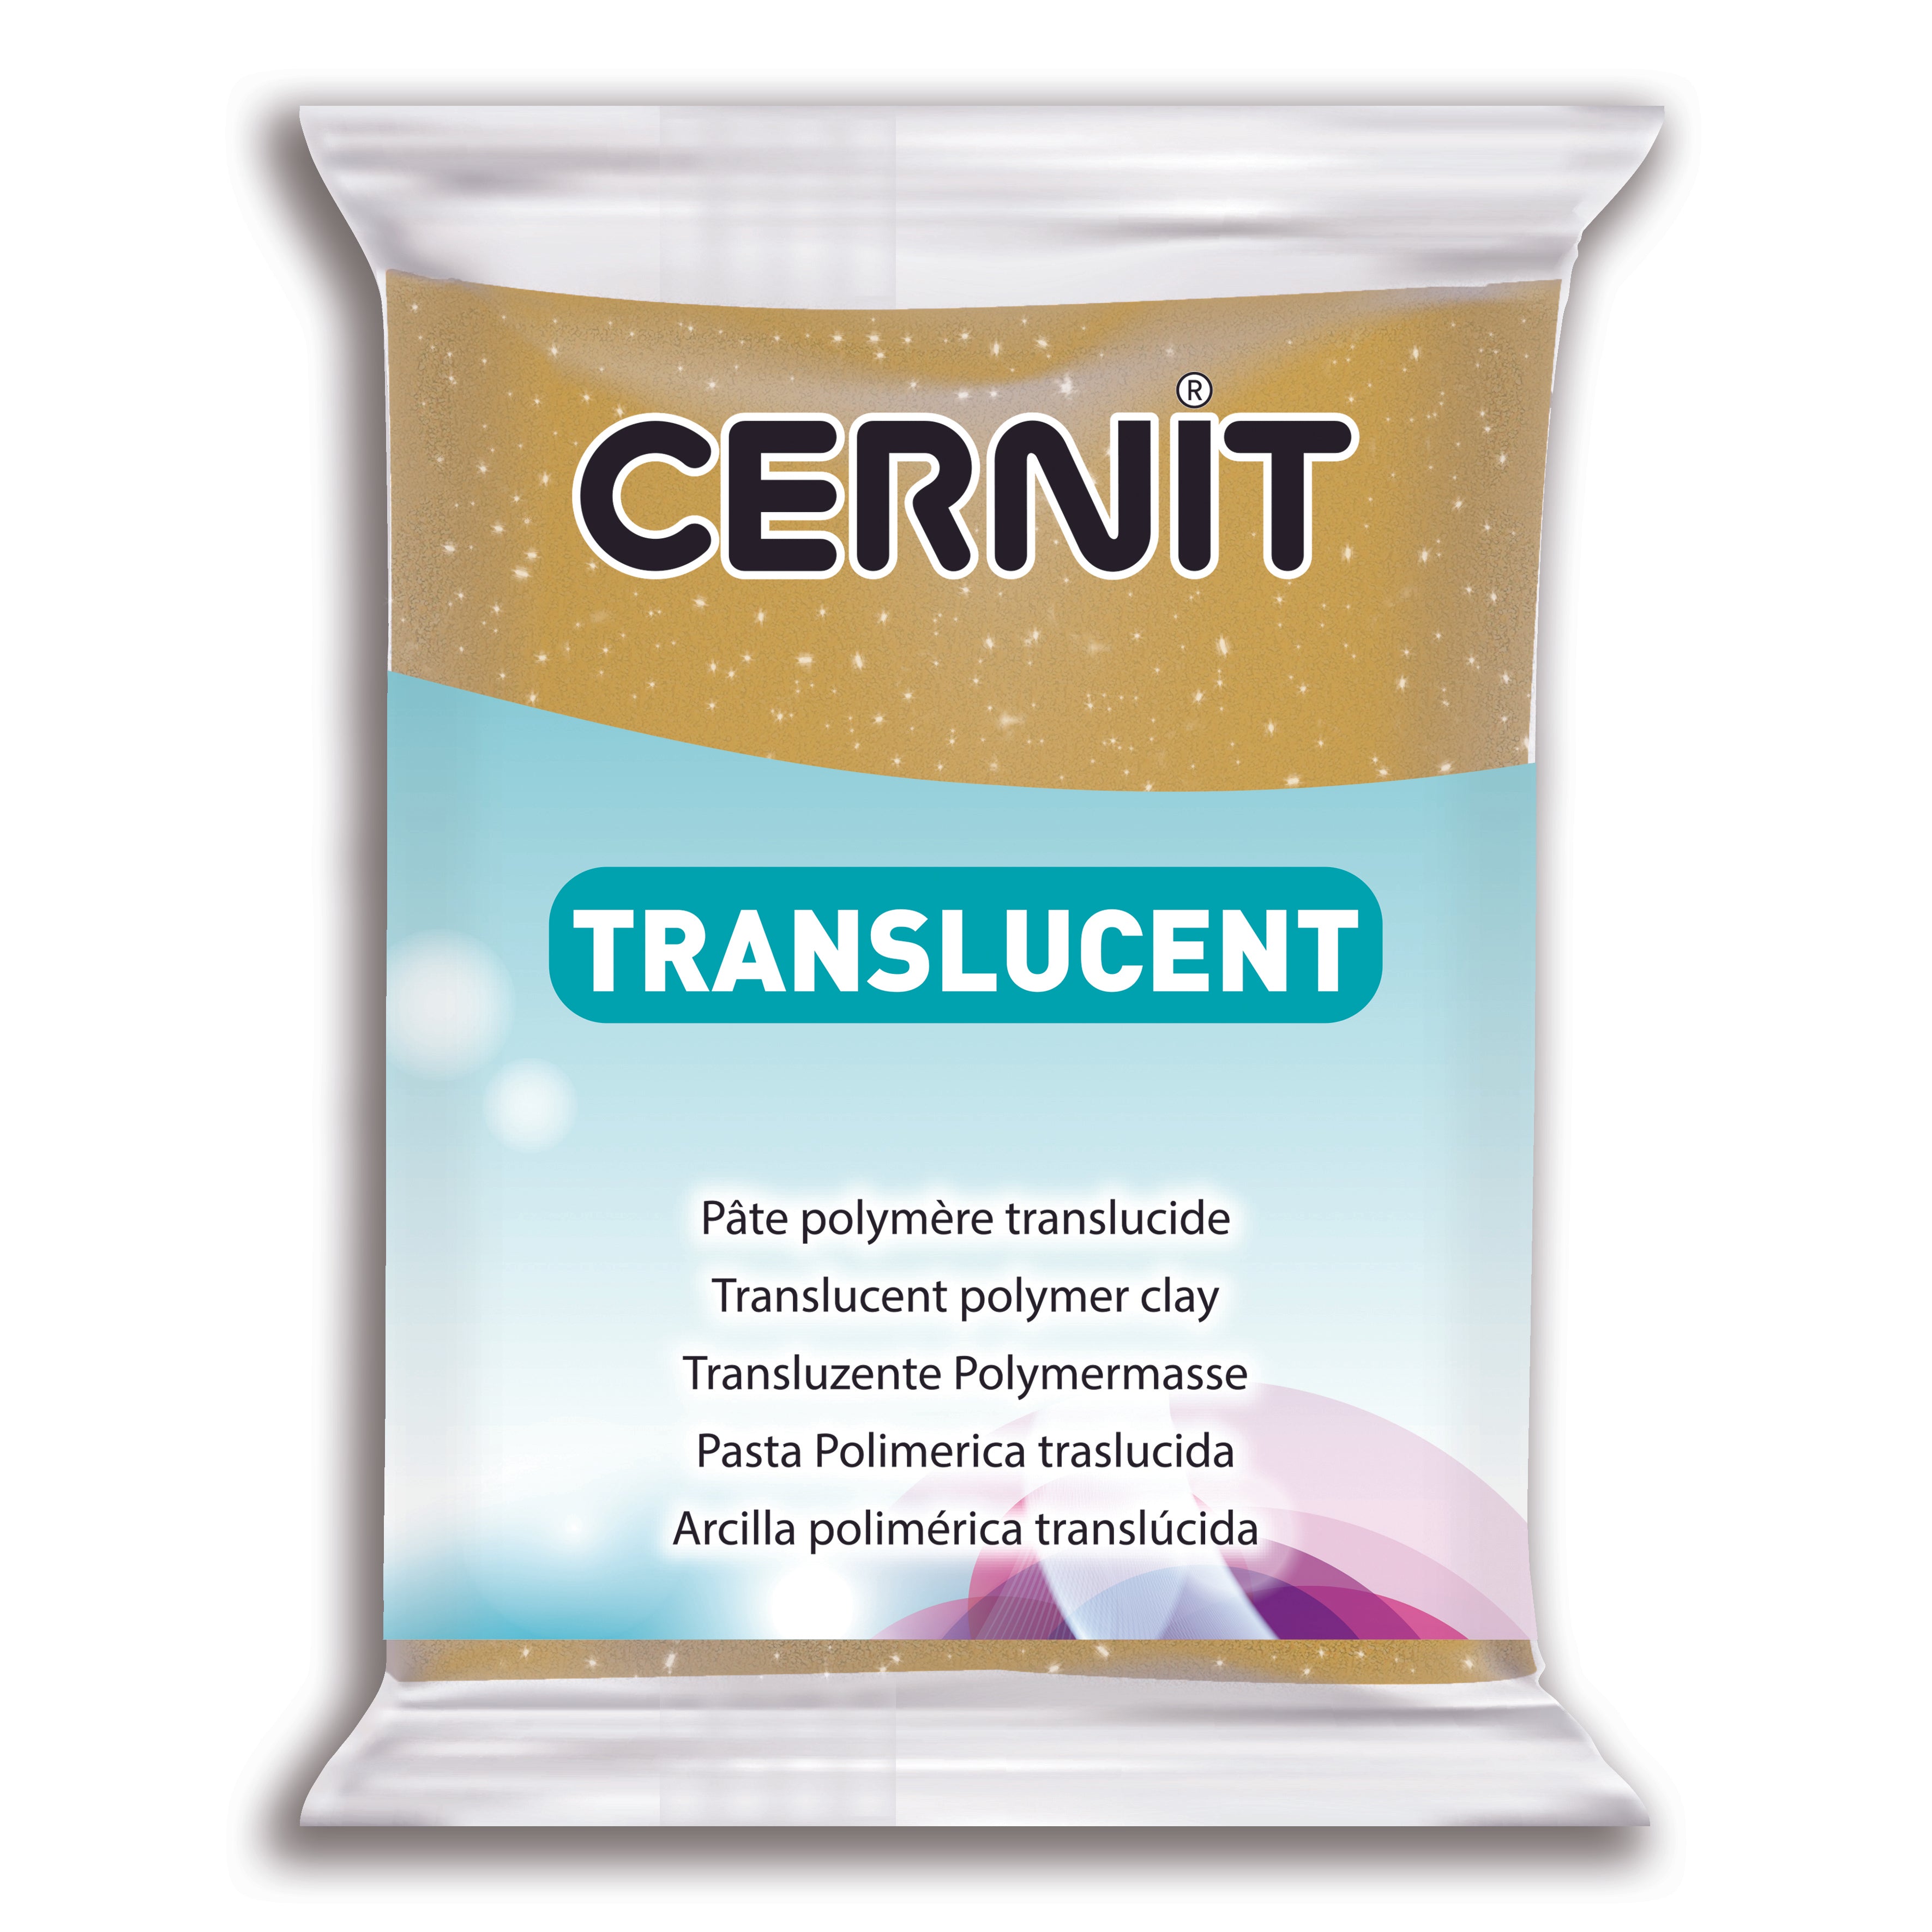 Cernit Translucent - Bordeaux 56g